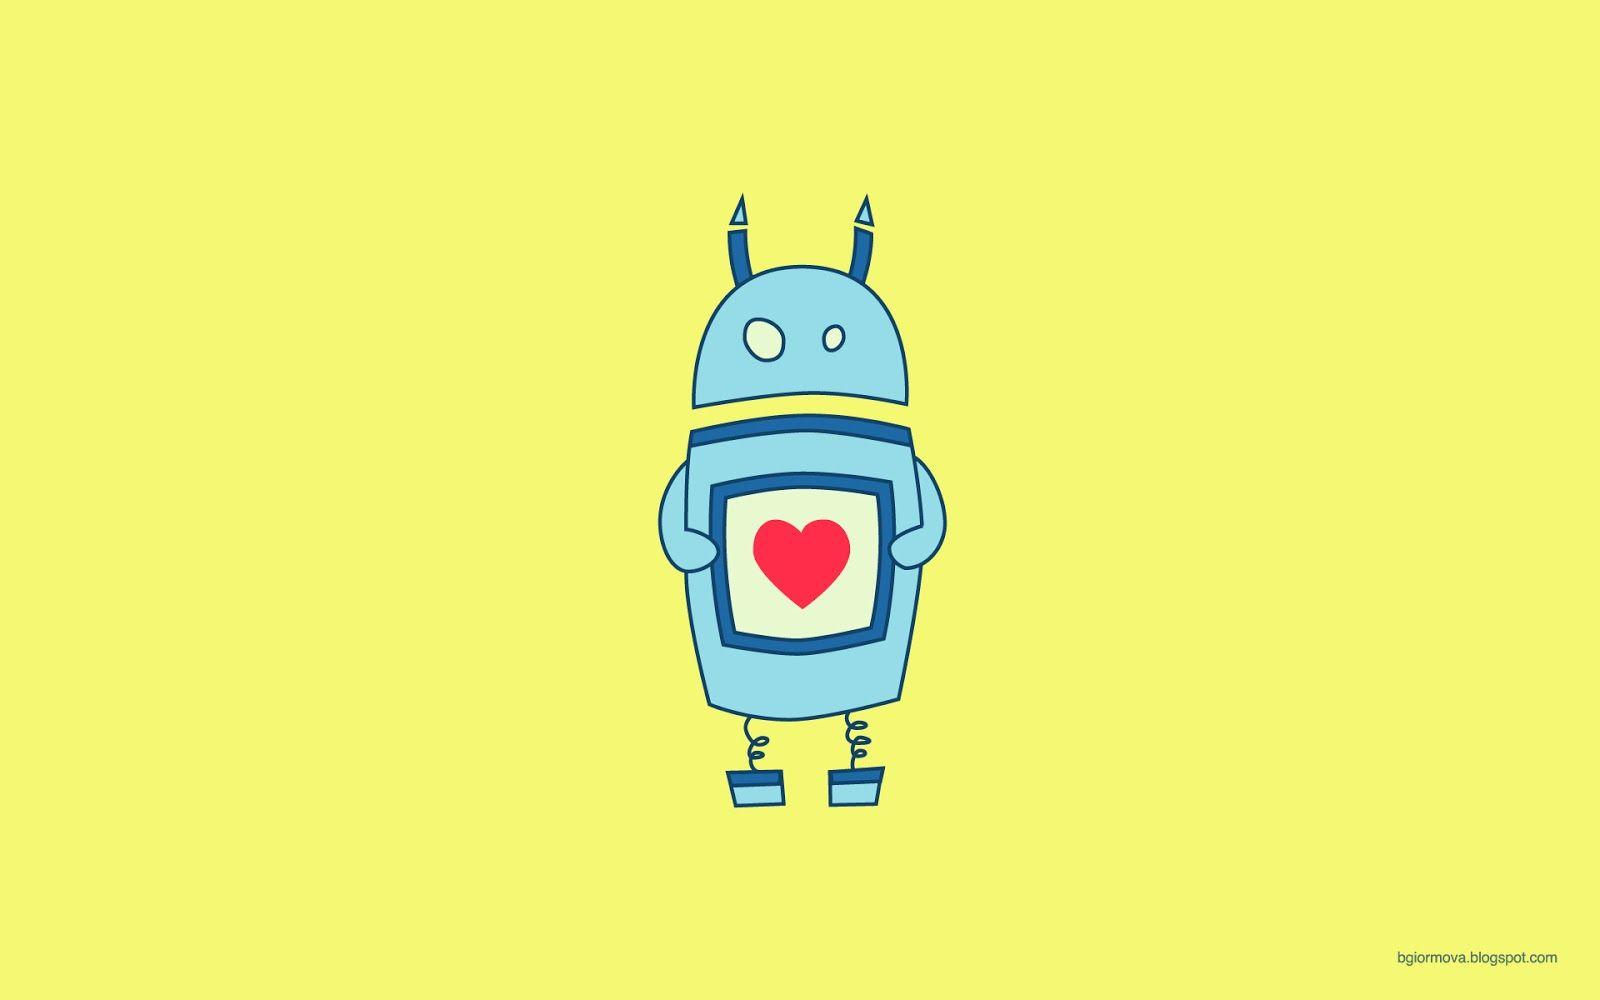 Wallpaper For > Cute Robot Love Wallpaper